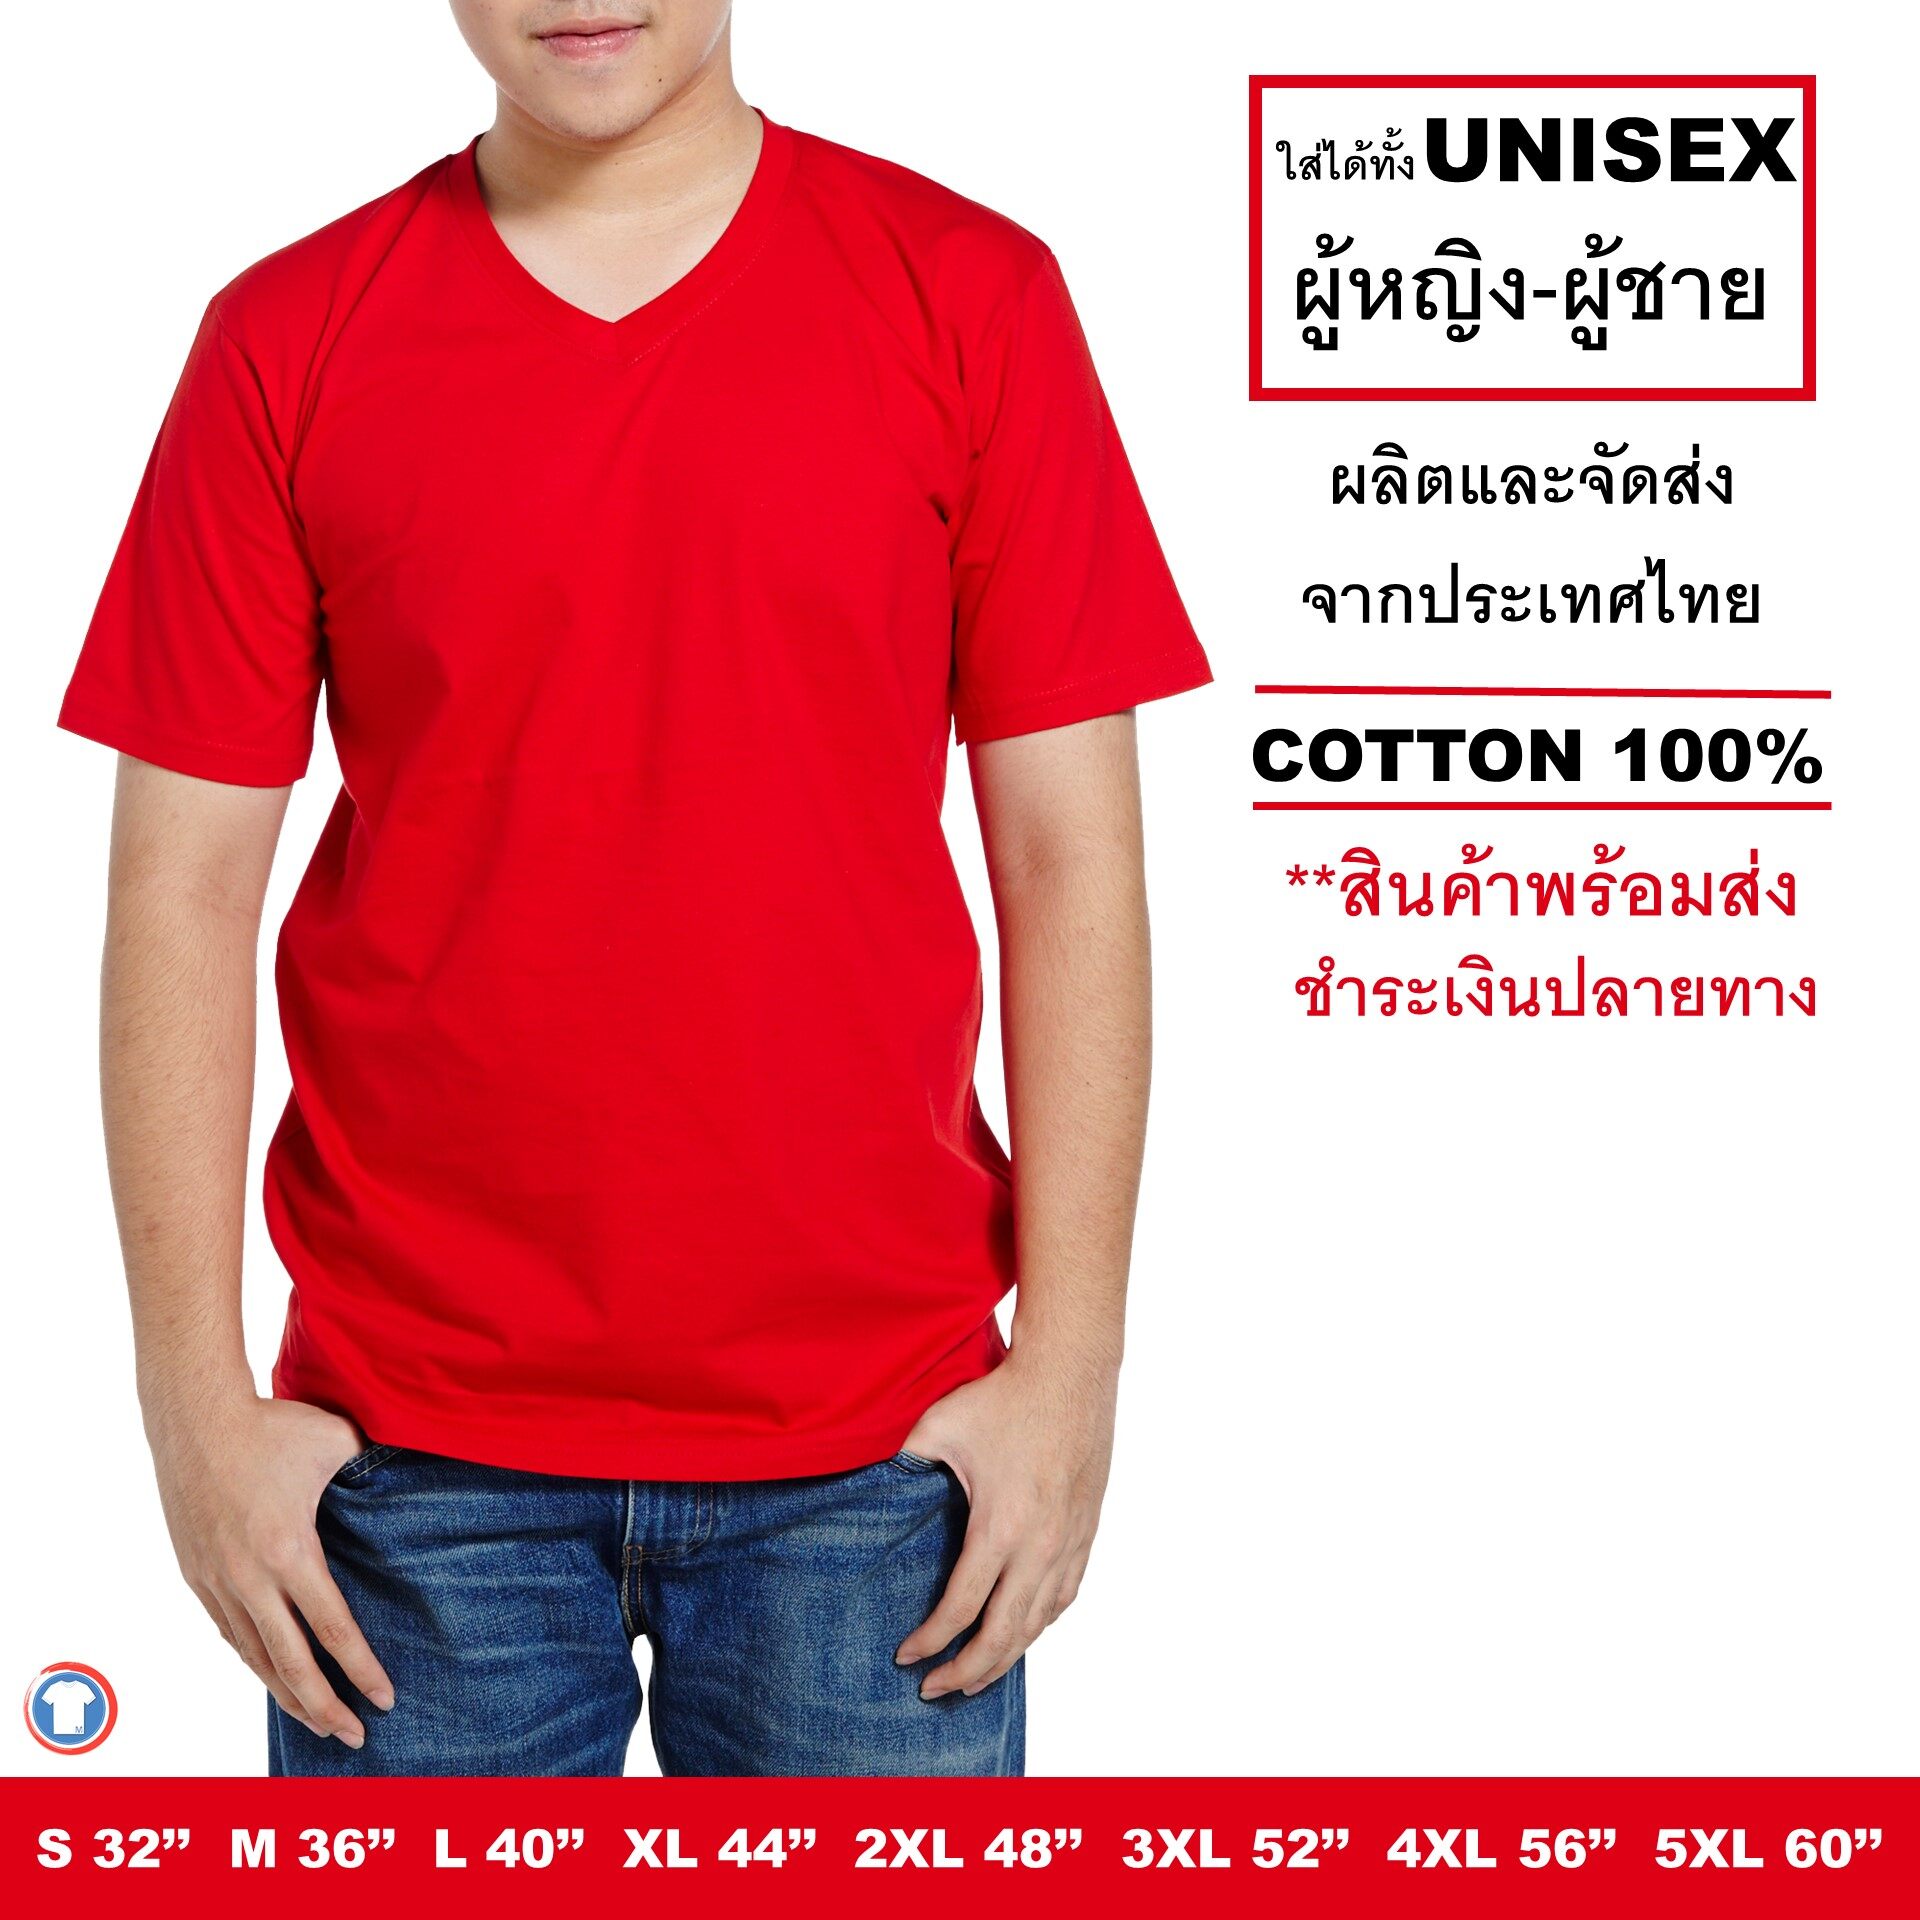 Mercury T-shirt เสื้อยืดสีพื้น คอวี สีแดง แขนสั้น ผ้านิ่ม สีไม่ตก ไม่ย้วย เป็นได้ทั้ง เสื้อยืดผู้หญิง เสื้อยืดผู้ชาย จัดส่งเร็ว (Short sleeve t-shirt)